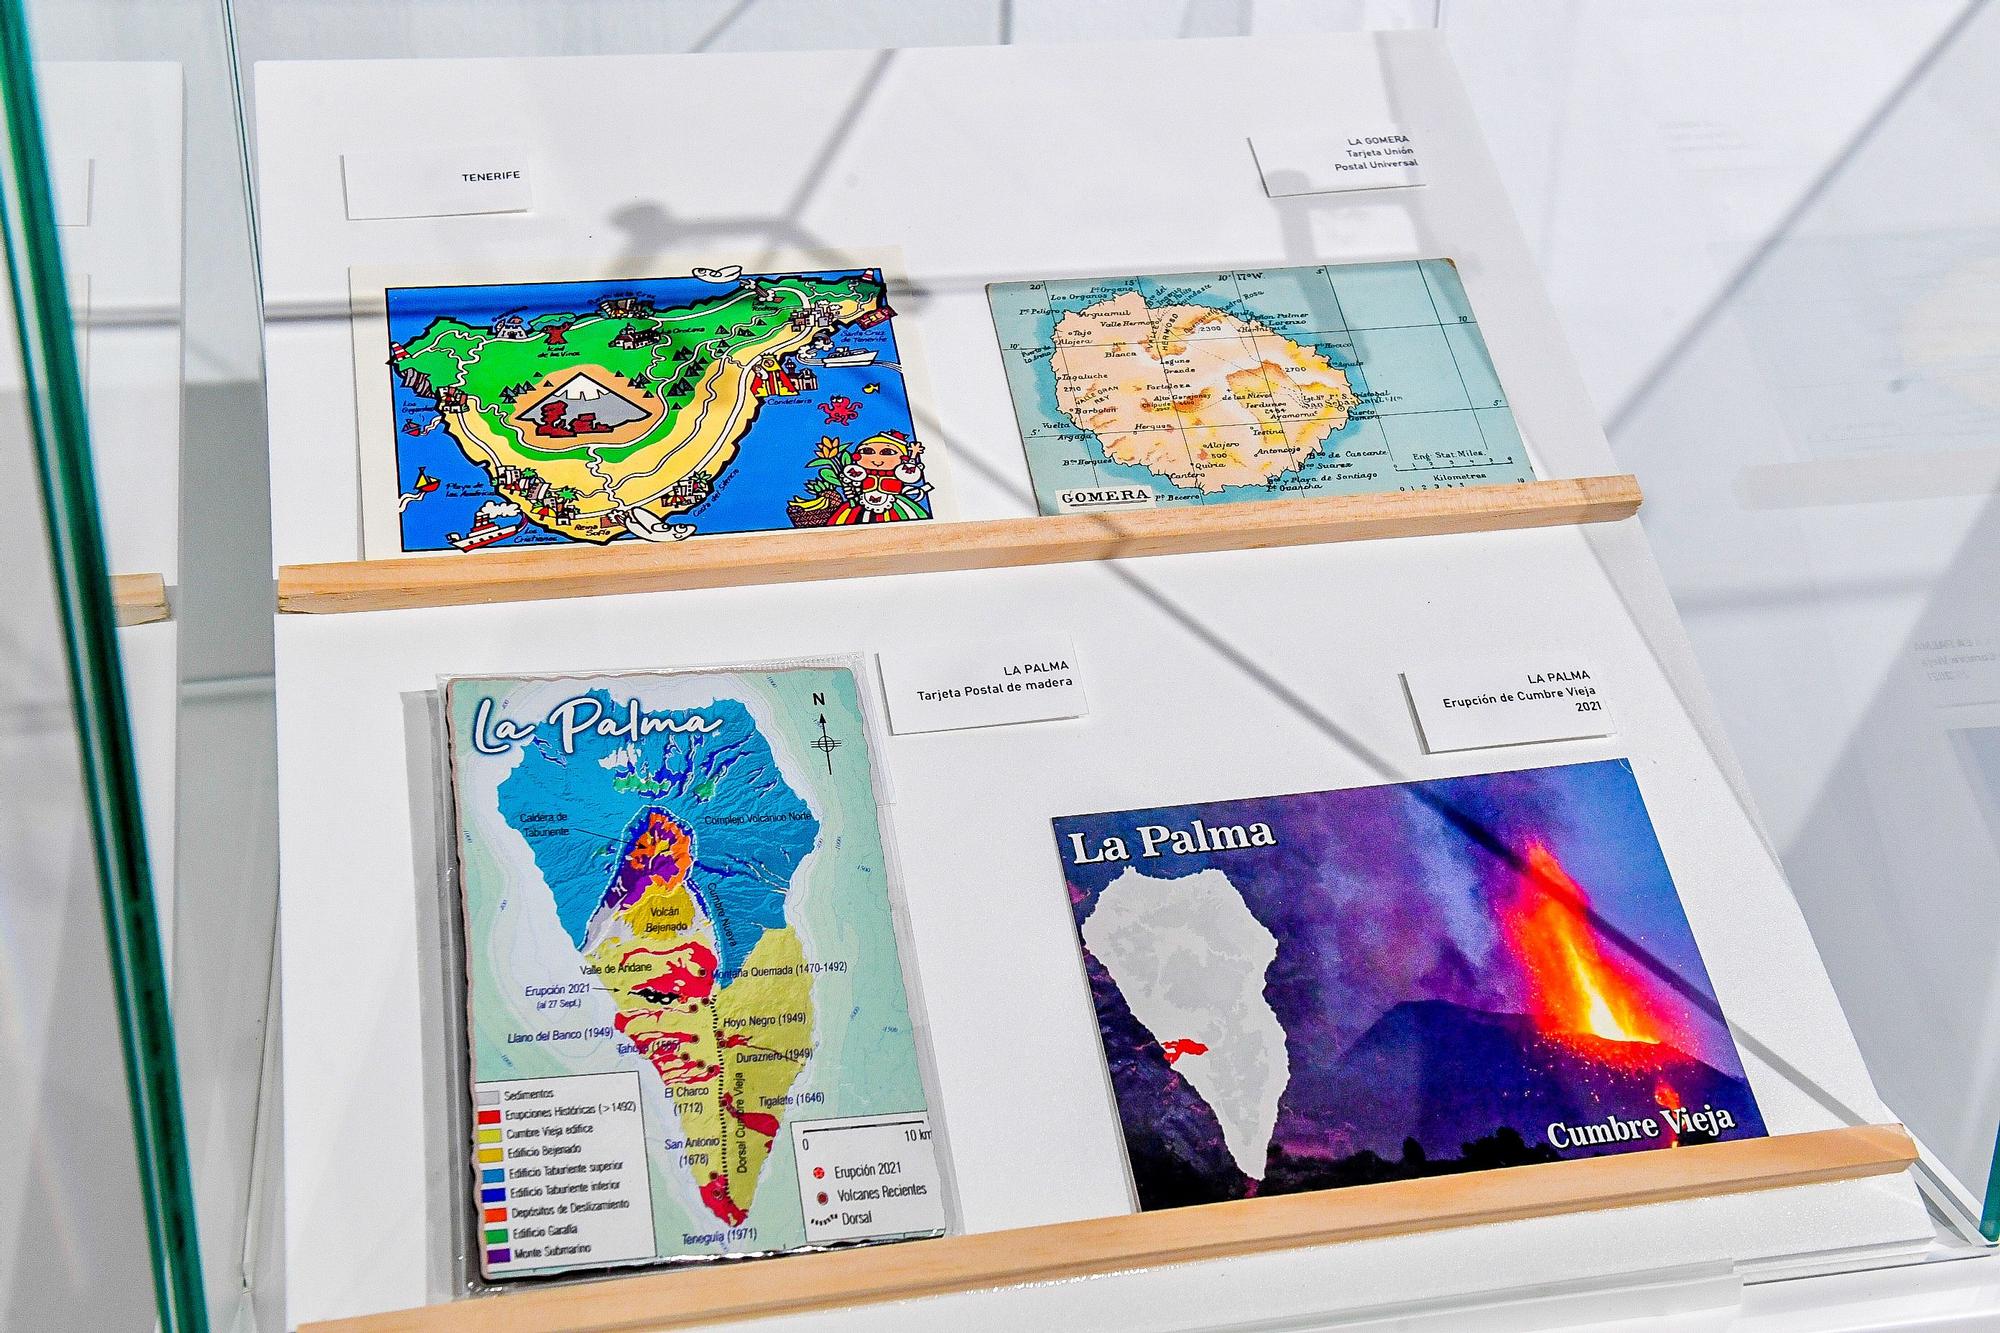 Exposición 'La cartografía en las tarjetas postales' en el Museo Elder